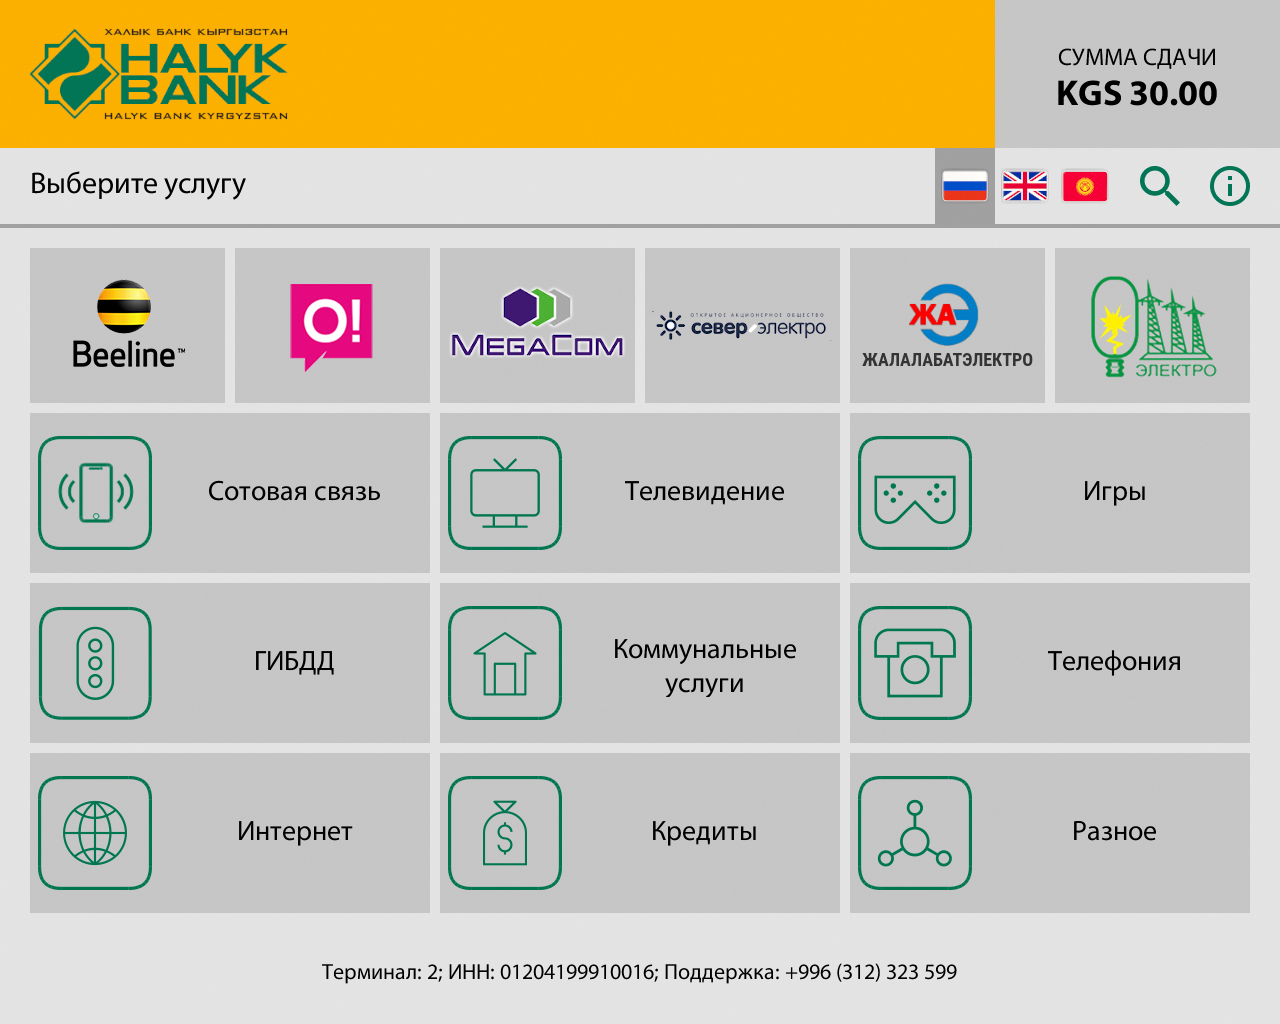 Халык Банк Кыргызстан внедряет ПО для АДМ и платежных терминалов от Soft-logic - рис.4